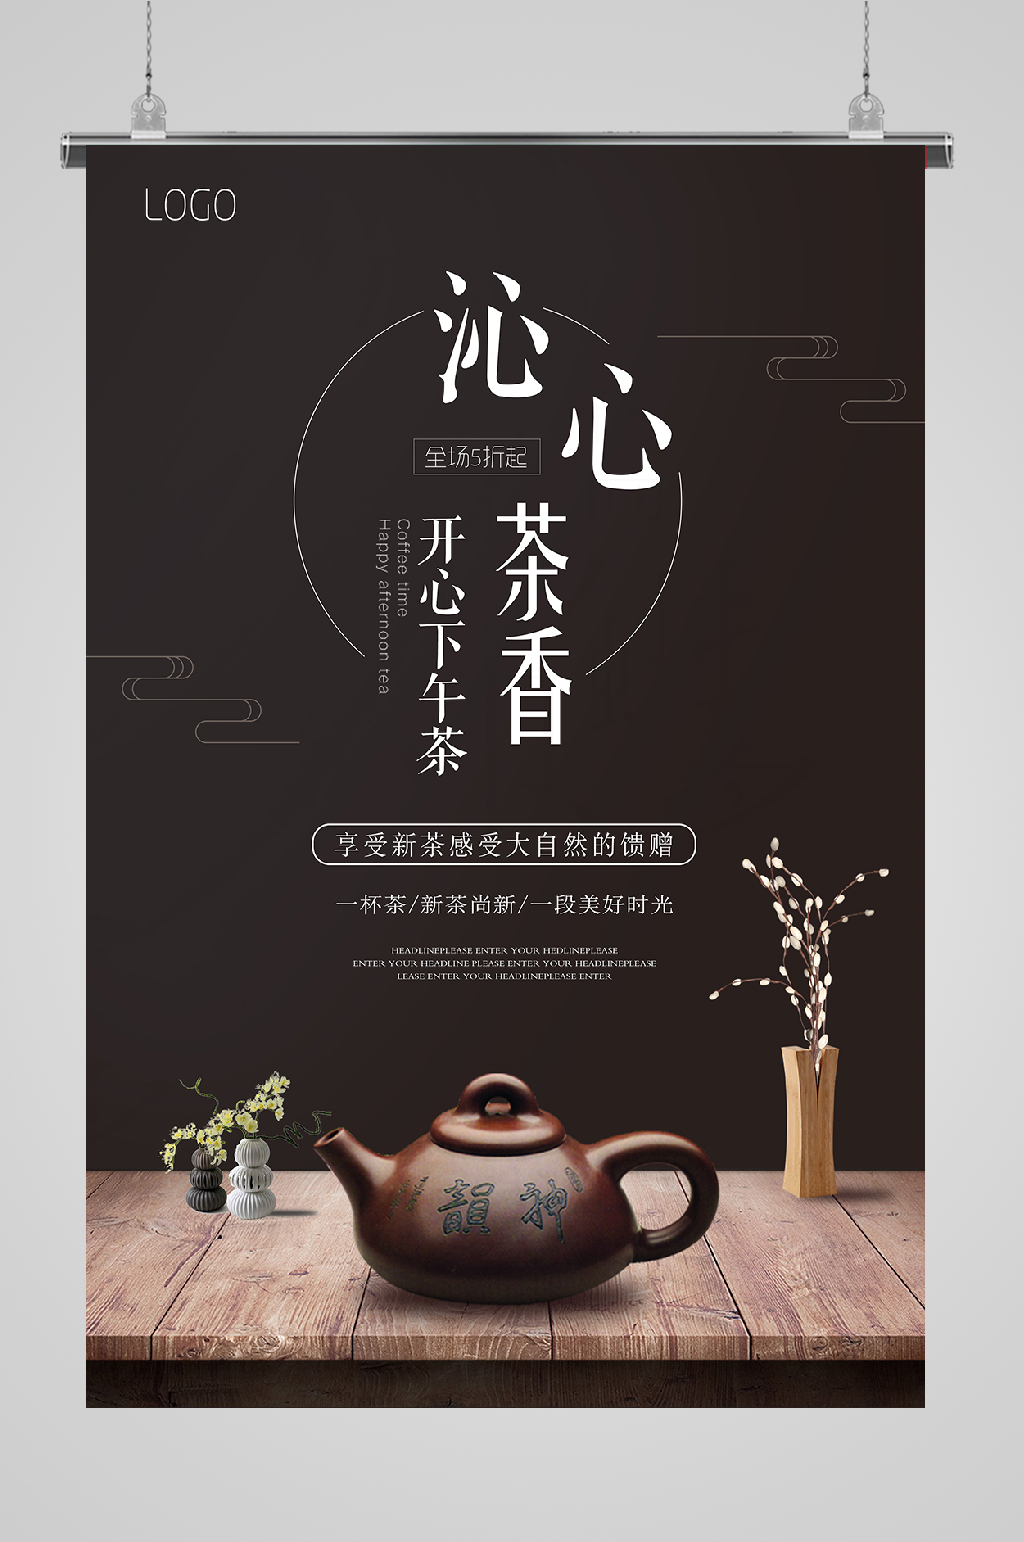 茶艺主题文案图片